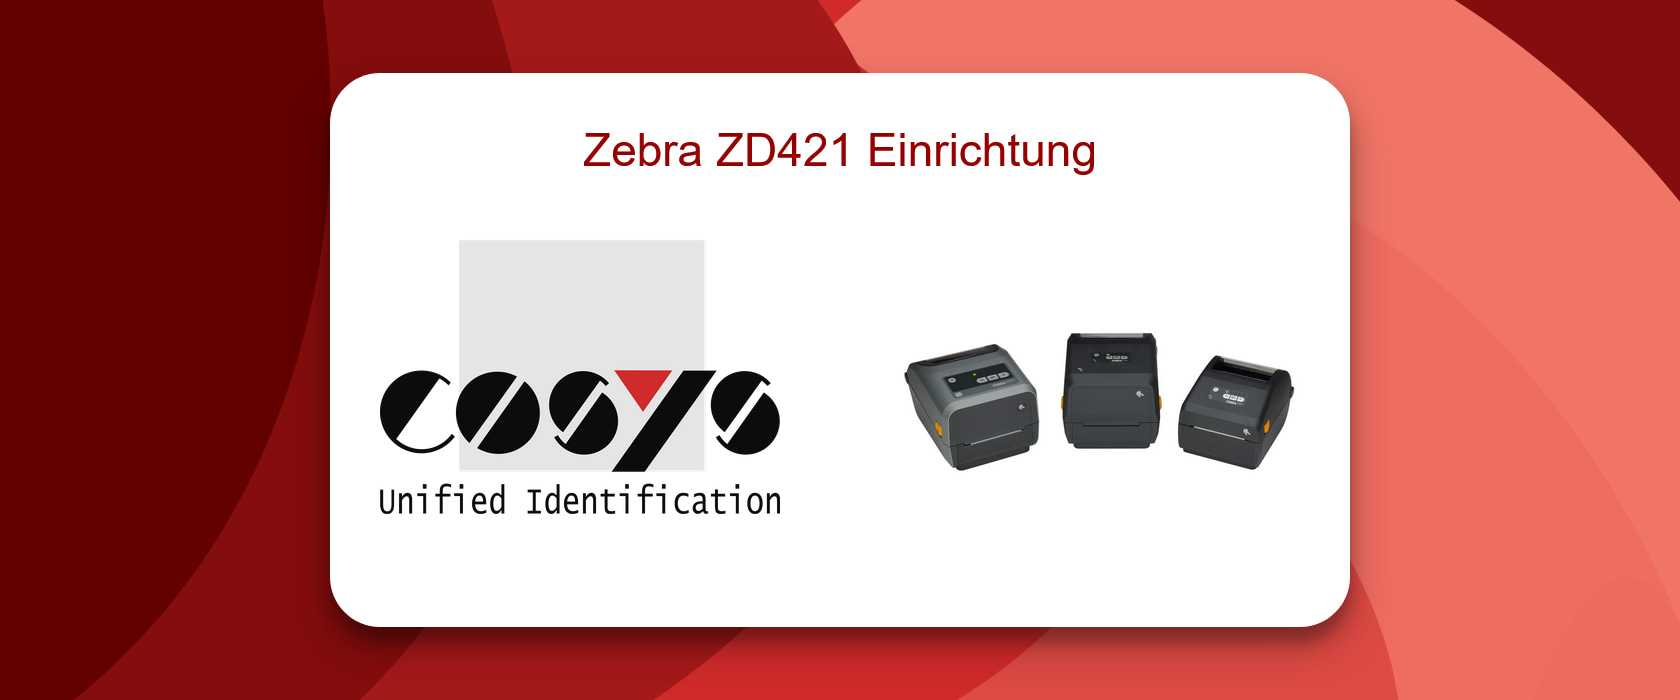 Zebra ZD421 Einrichtungsprozess